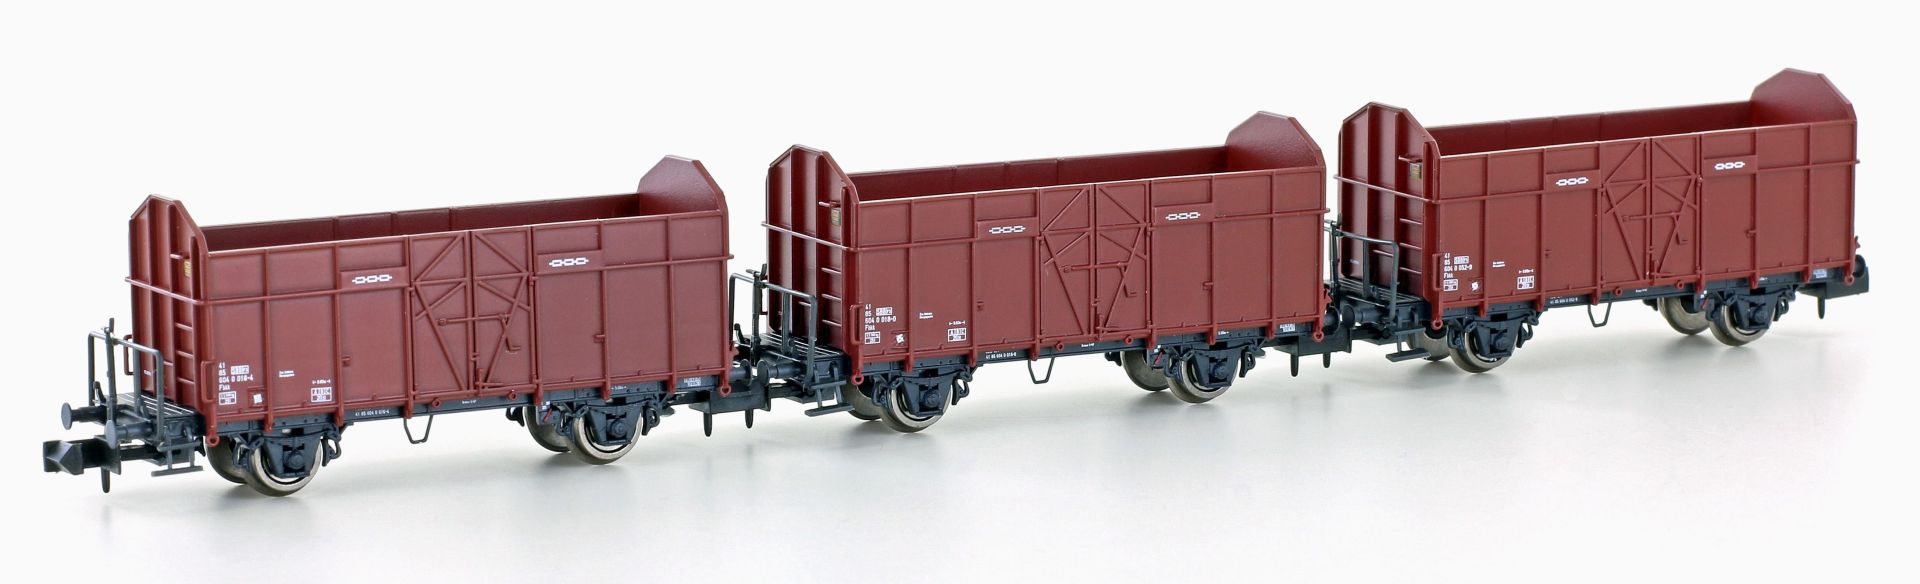 Hobbytrain H24301 - 3er Set offene Güterwagen Fbkk, SBB, Ep.IV